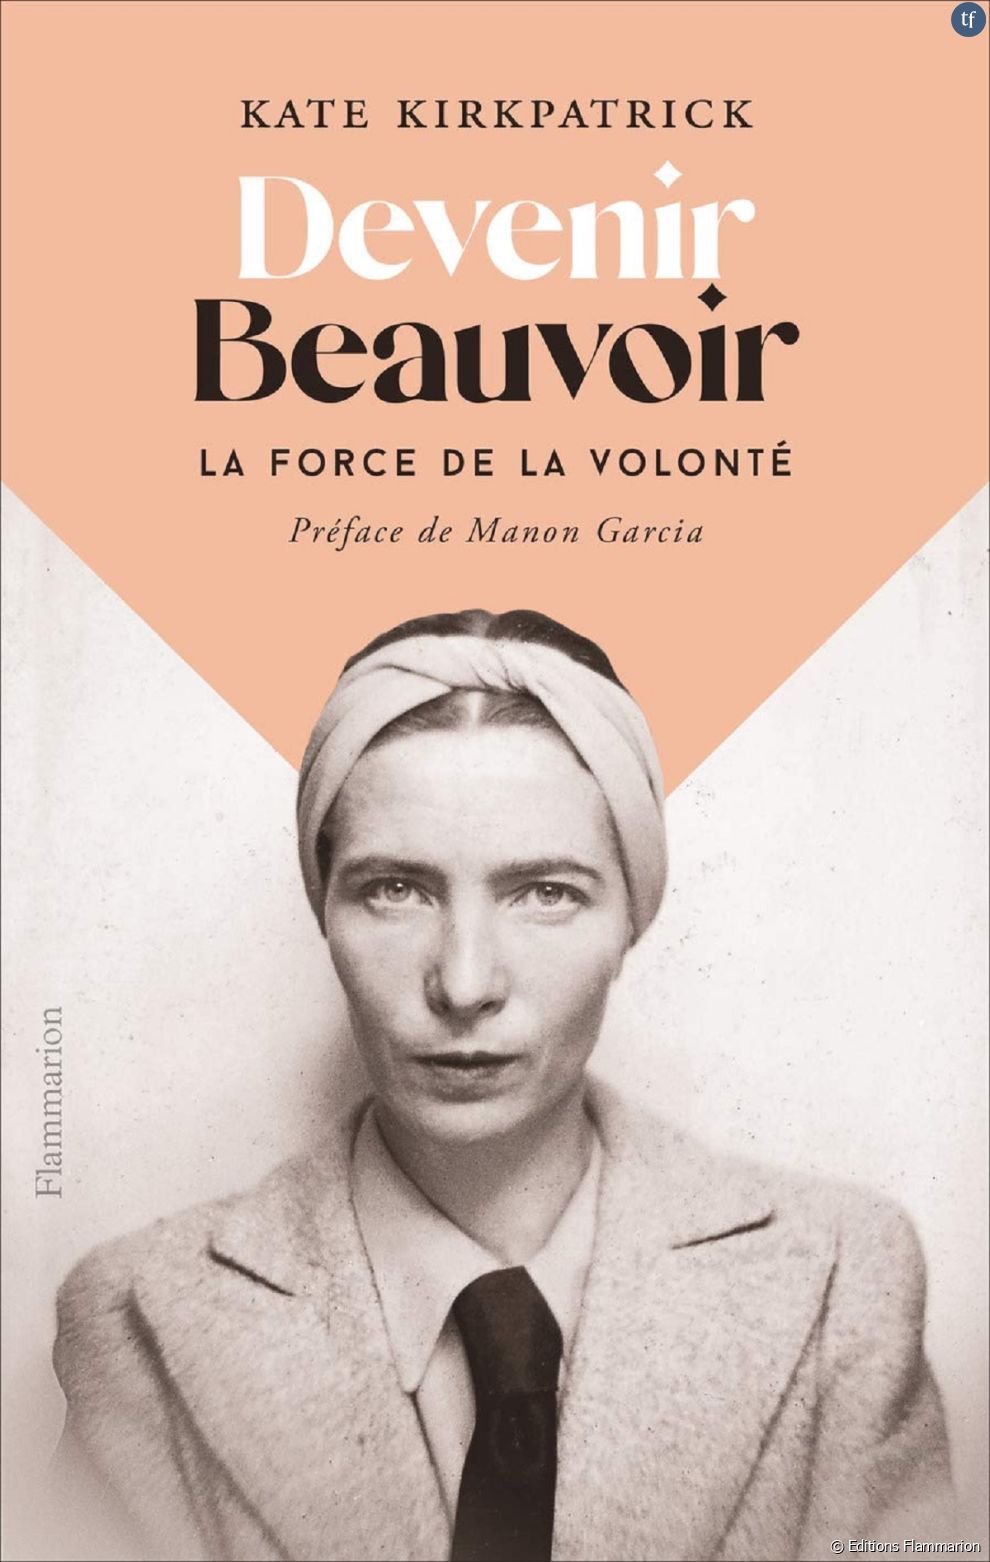 Un visage au coeur de ce nouveau film. En attendant, on relira également &quot;Devenir Beauvoir : la force de la volonté&quot;, une super biographie de Kate Kirkpatrick sur l&#039;une des grandes voix du féminisme.